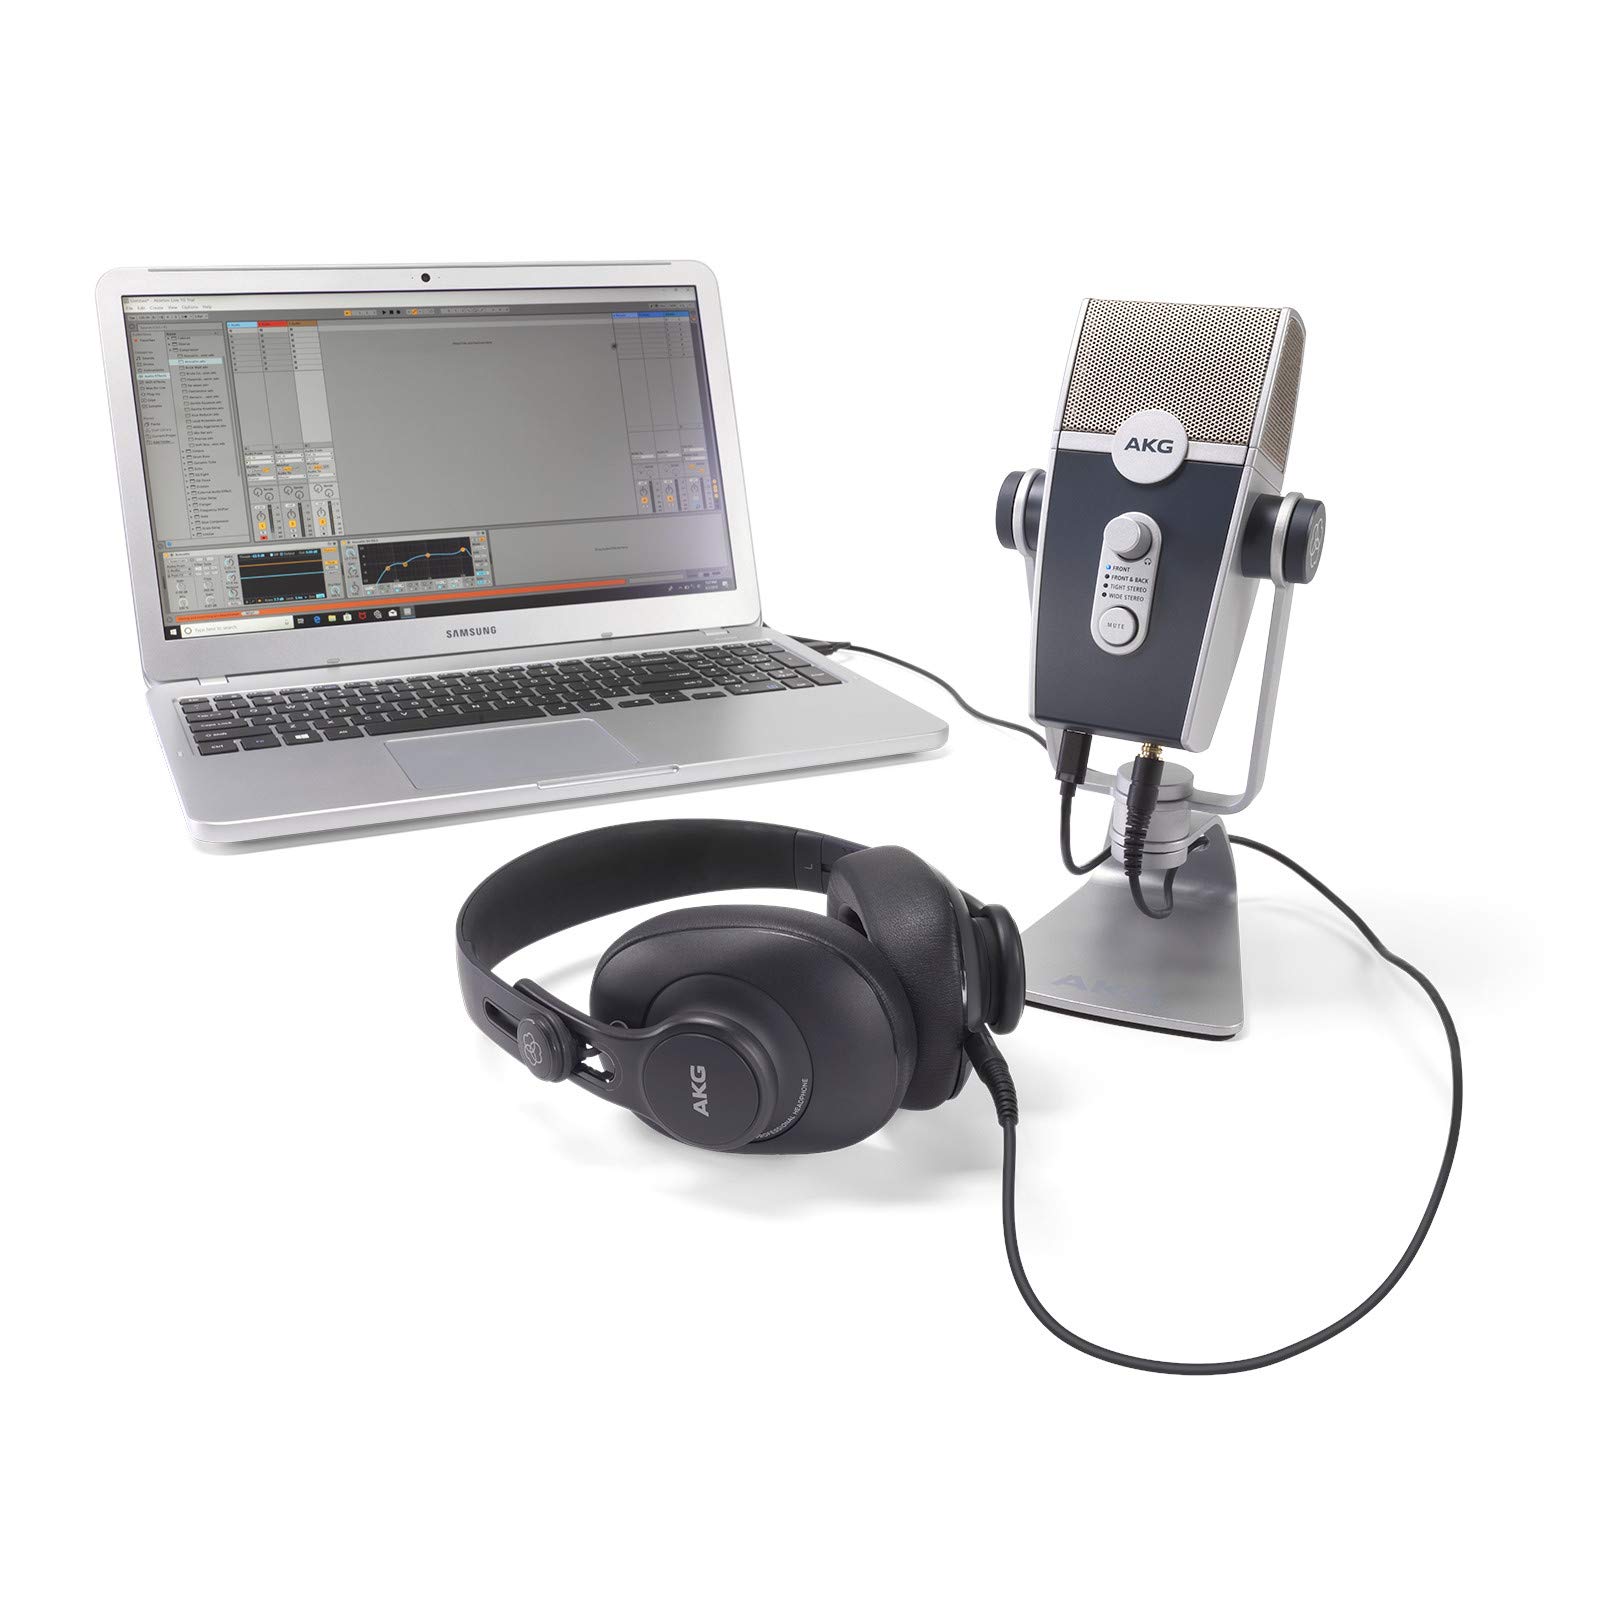  AKG Pro Audio ストリーマー、ビデオブロガー、ゲーマー向けの Pro Audio Podcaster Essentials キット - Lyra USB-C マイク、K371 ヘッドフォン、Ableton Lite ソフトウ...